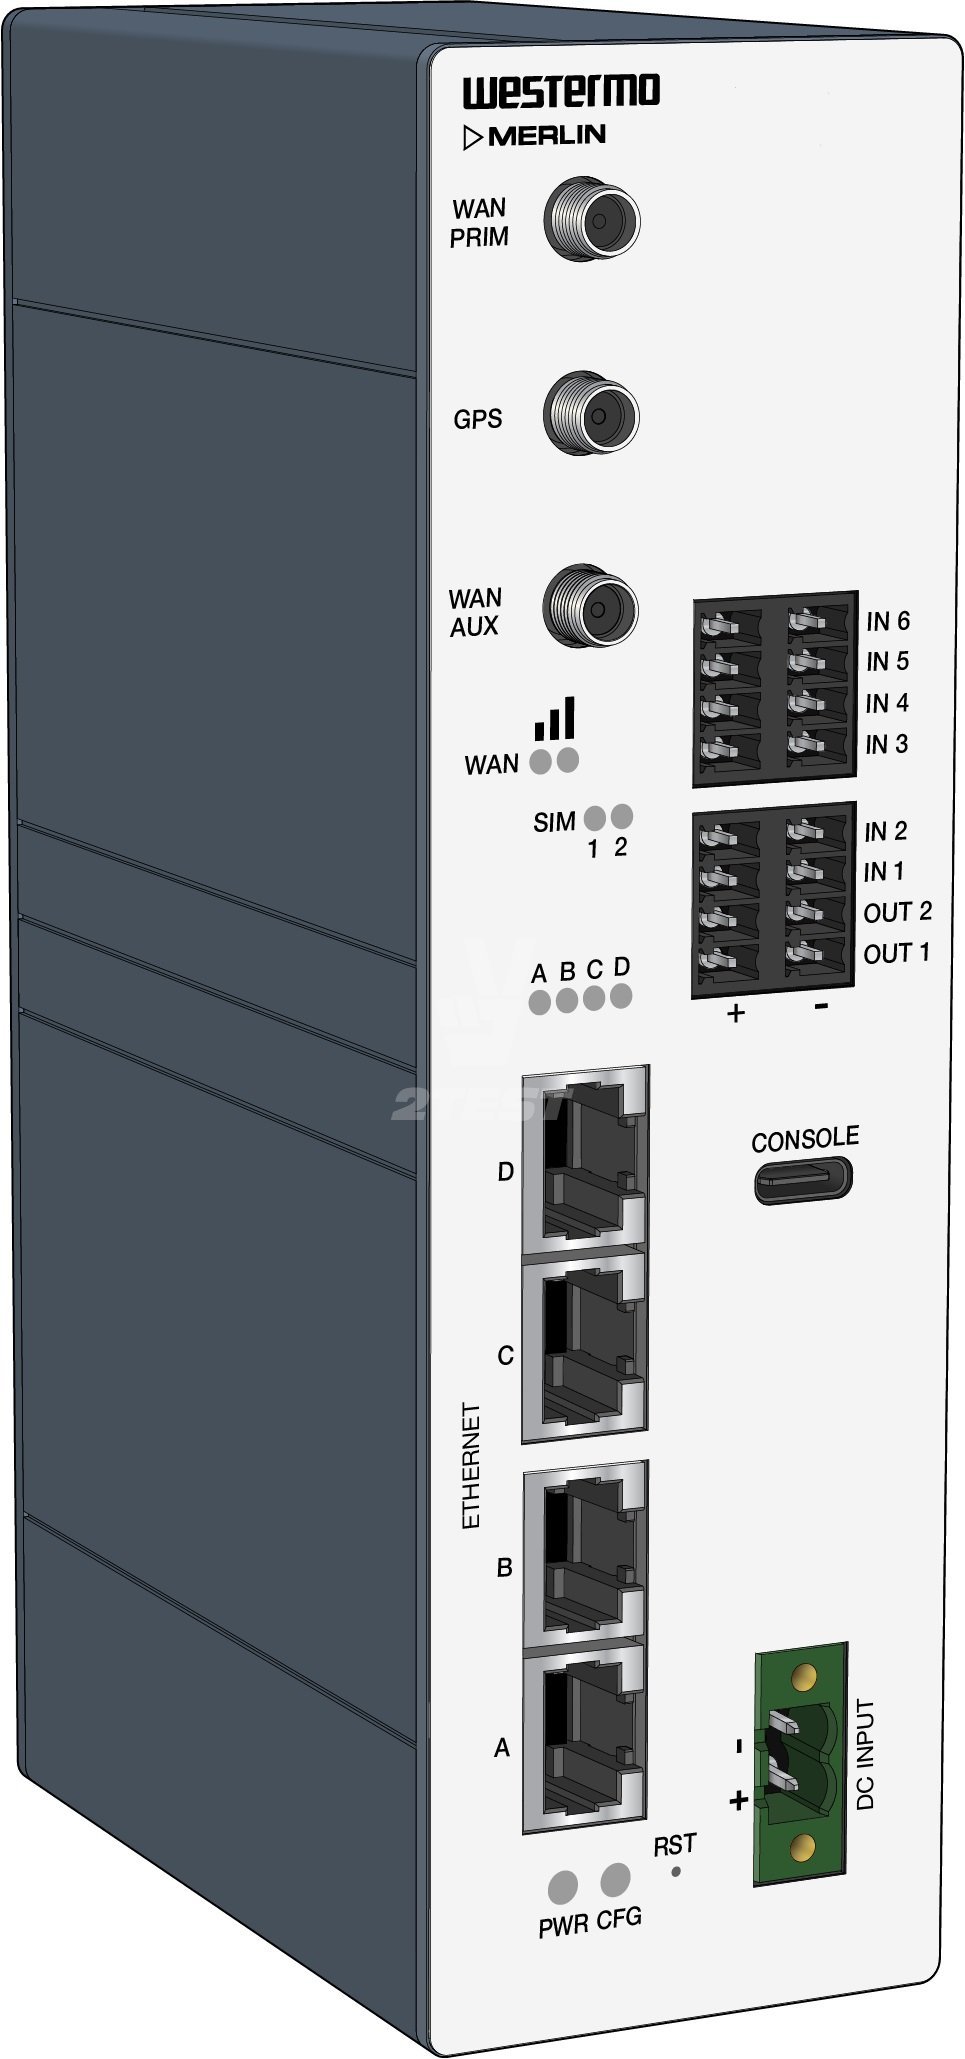 Решение 2TEST: Промышленные маршрутизаторы Westermo серии Merlin 4600 с поддержкой LTE